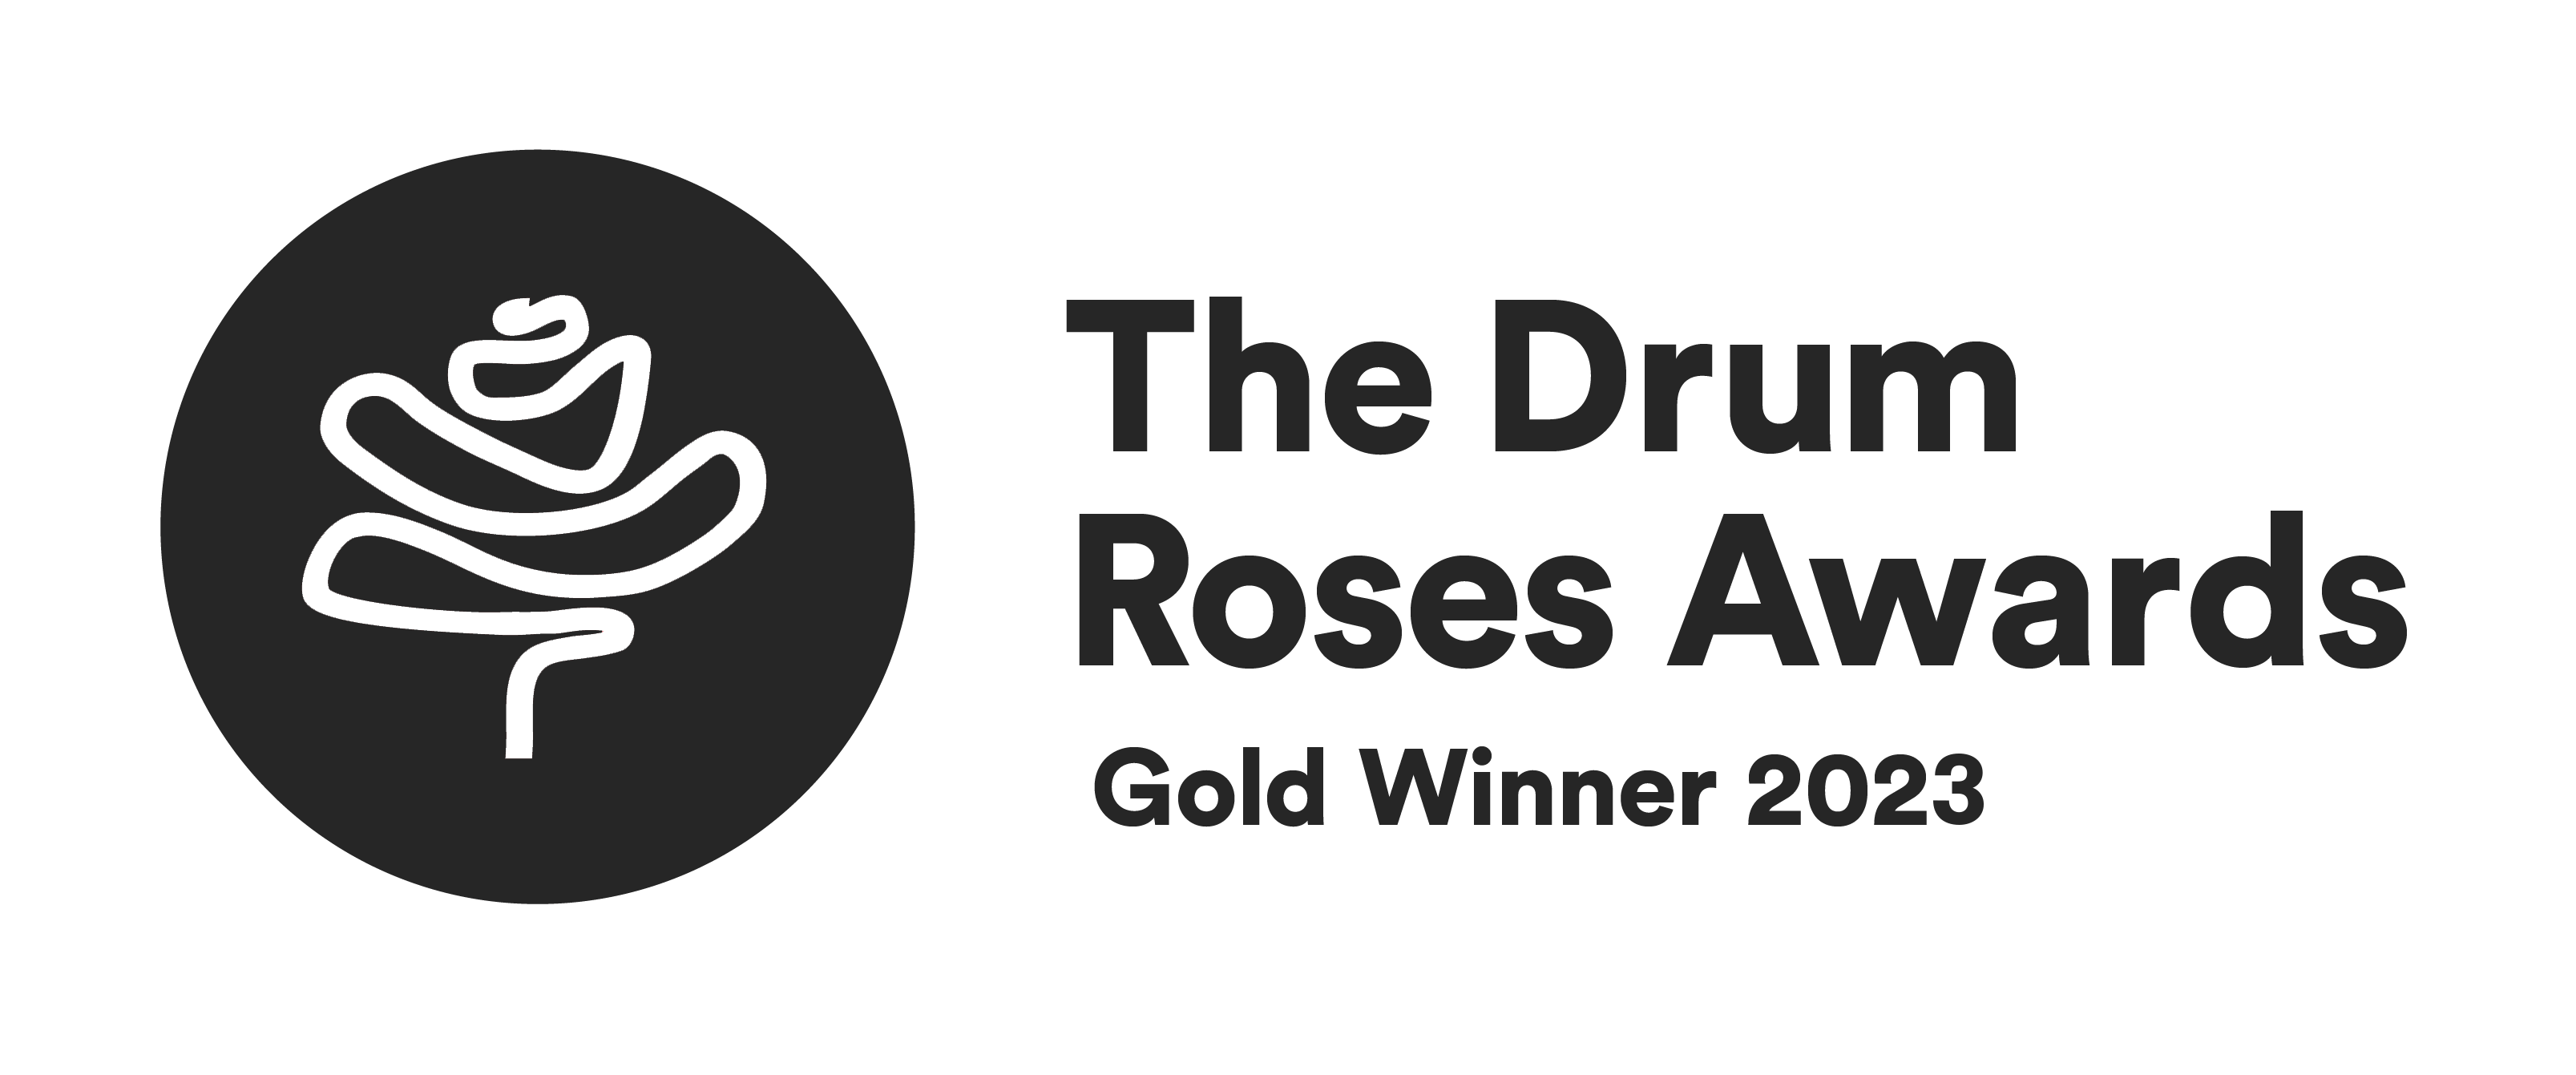 The Drum Roses Awards Gold Winner 2023